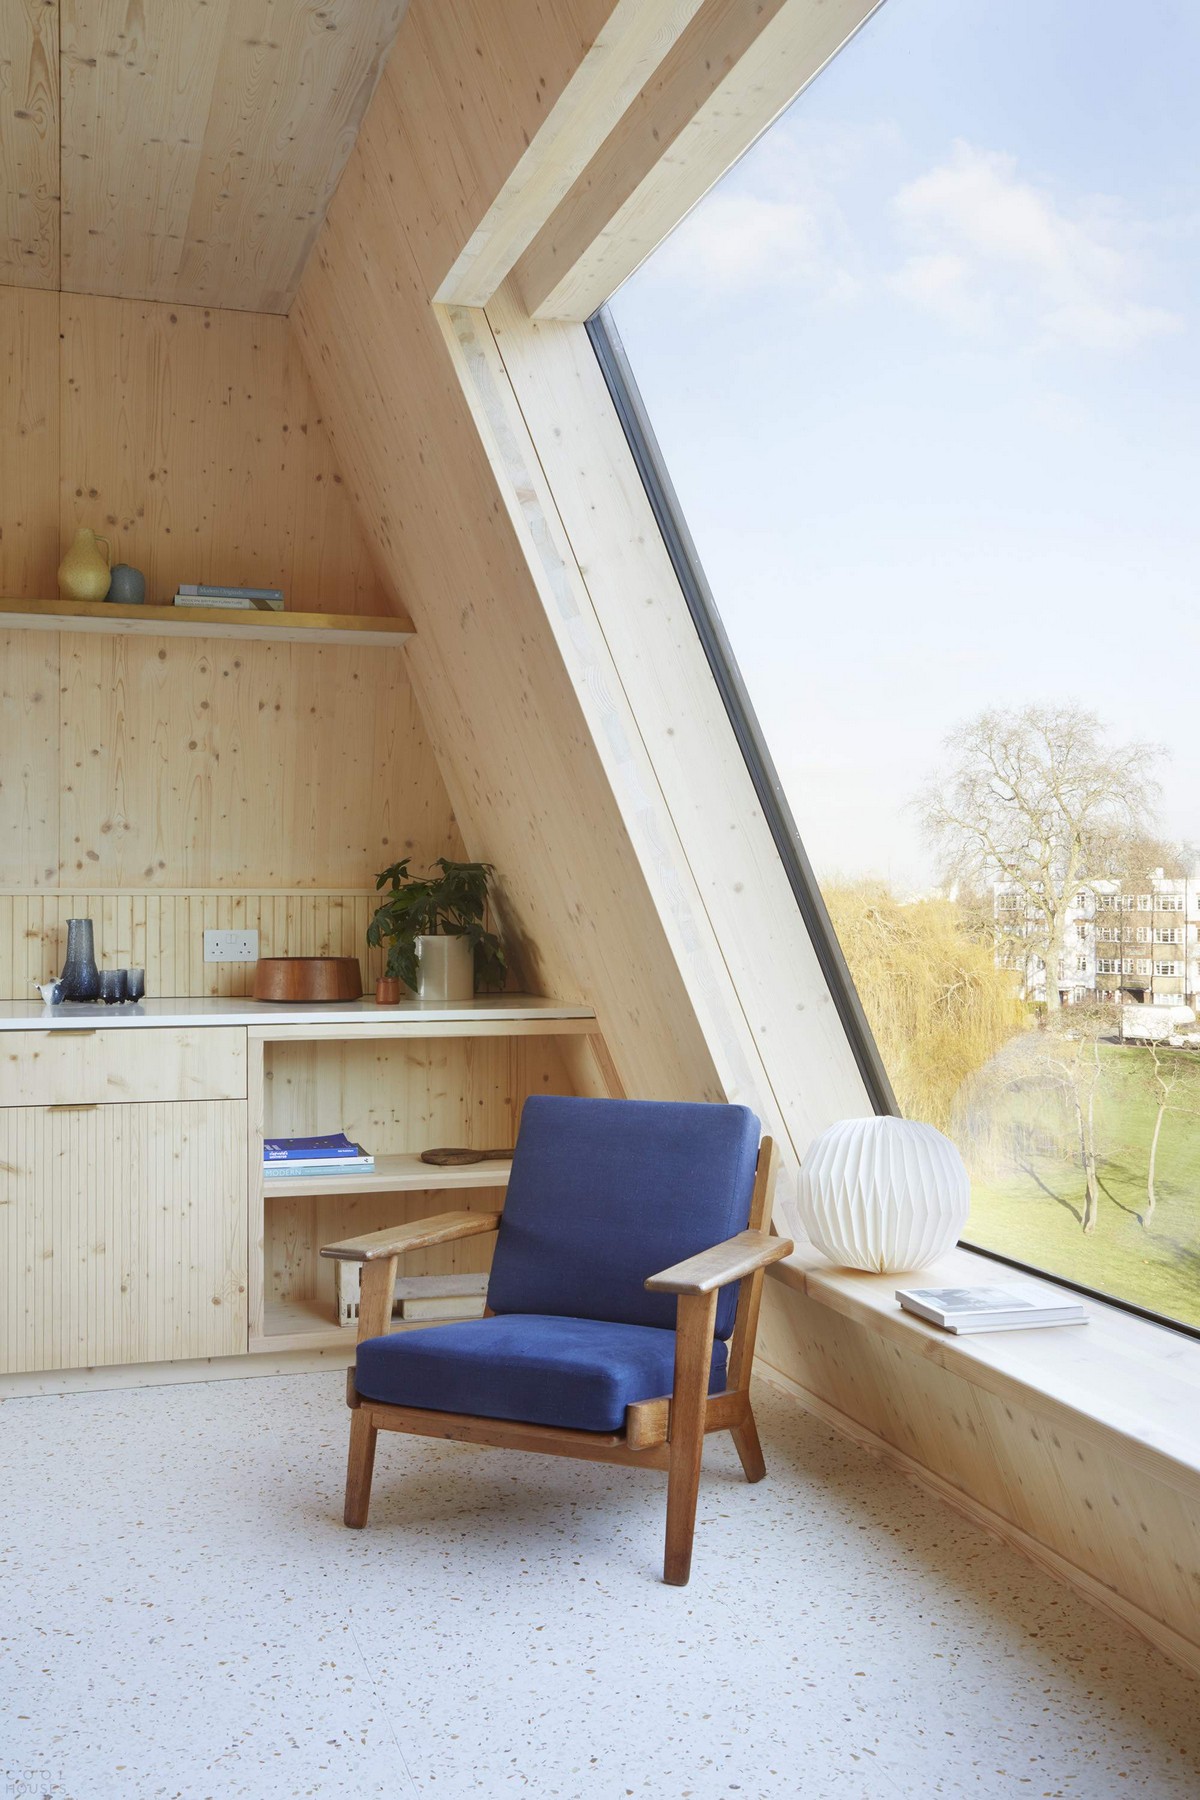 Жилой комплекс с экологически чистыми апартаментами в Лондоне Картинки и фото